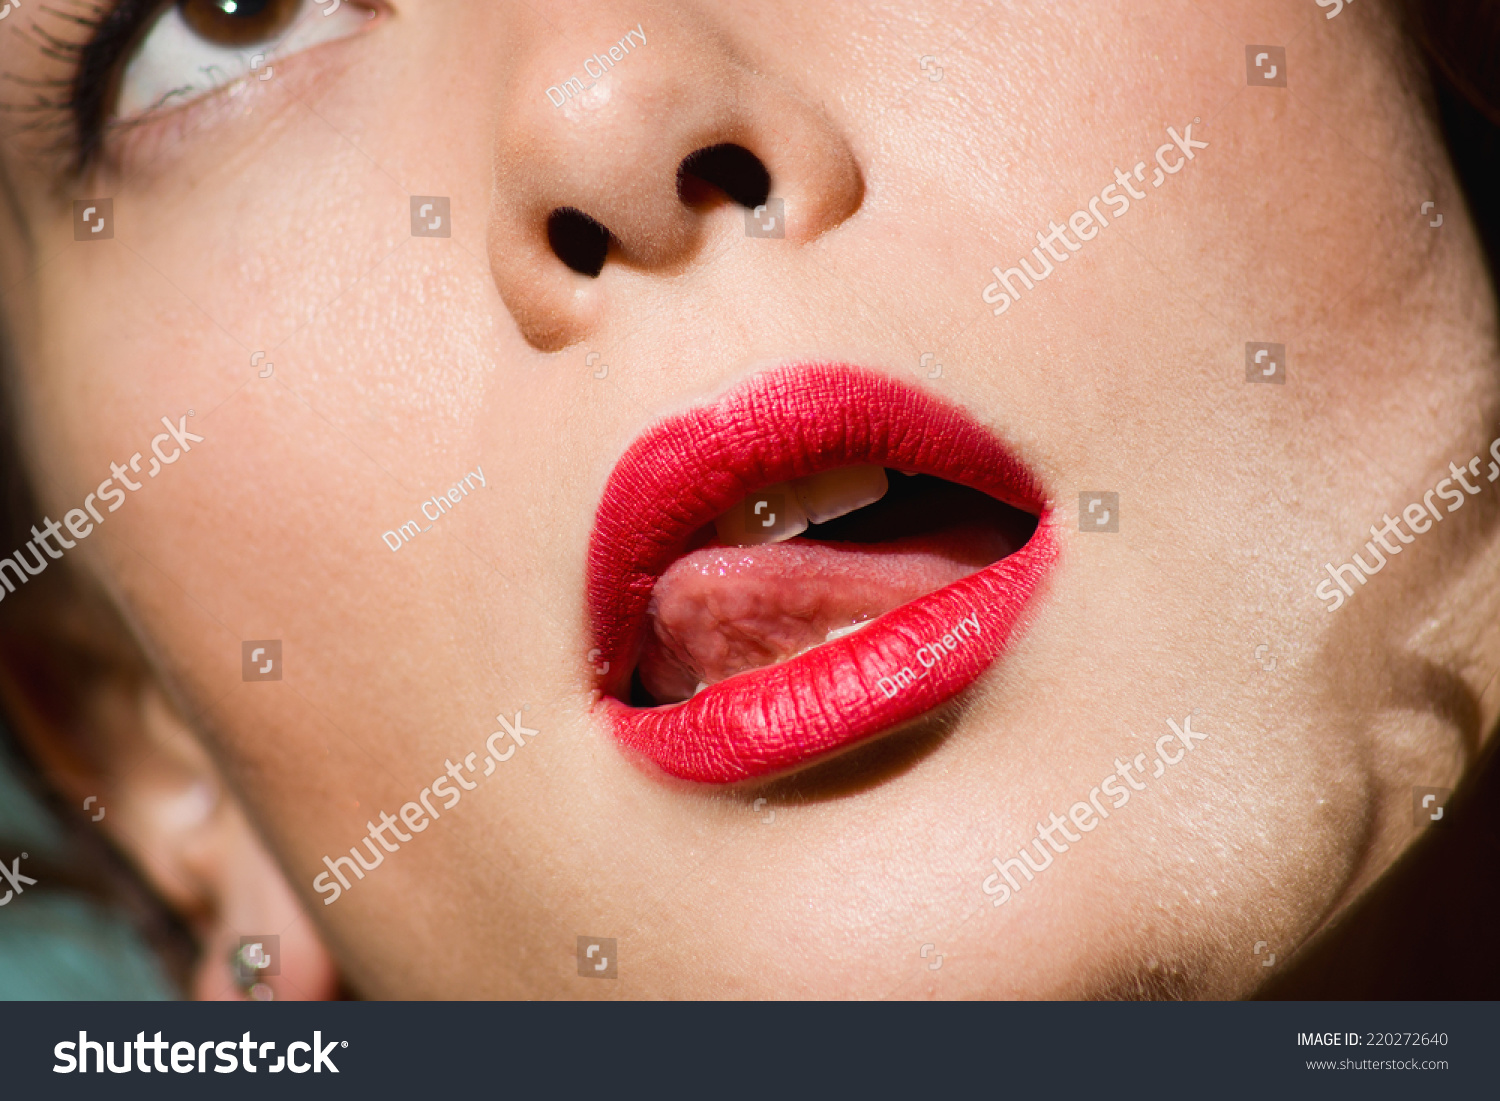 Девушка лижет губы